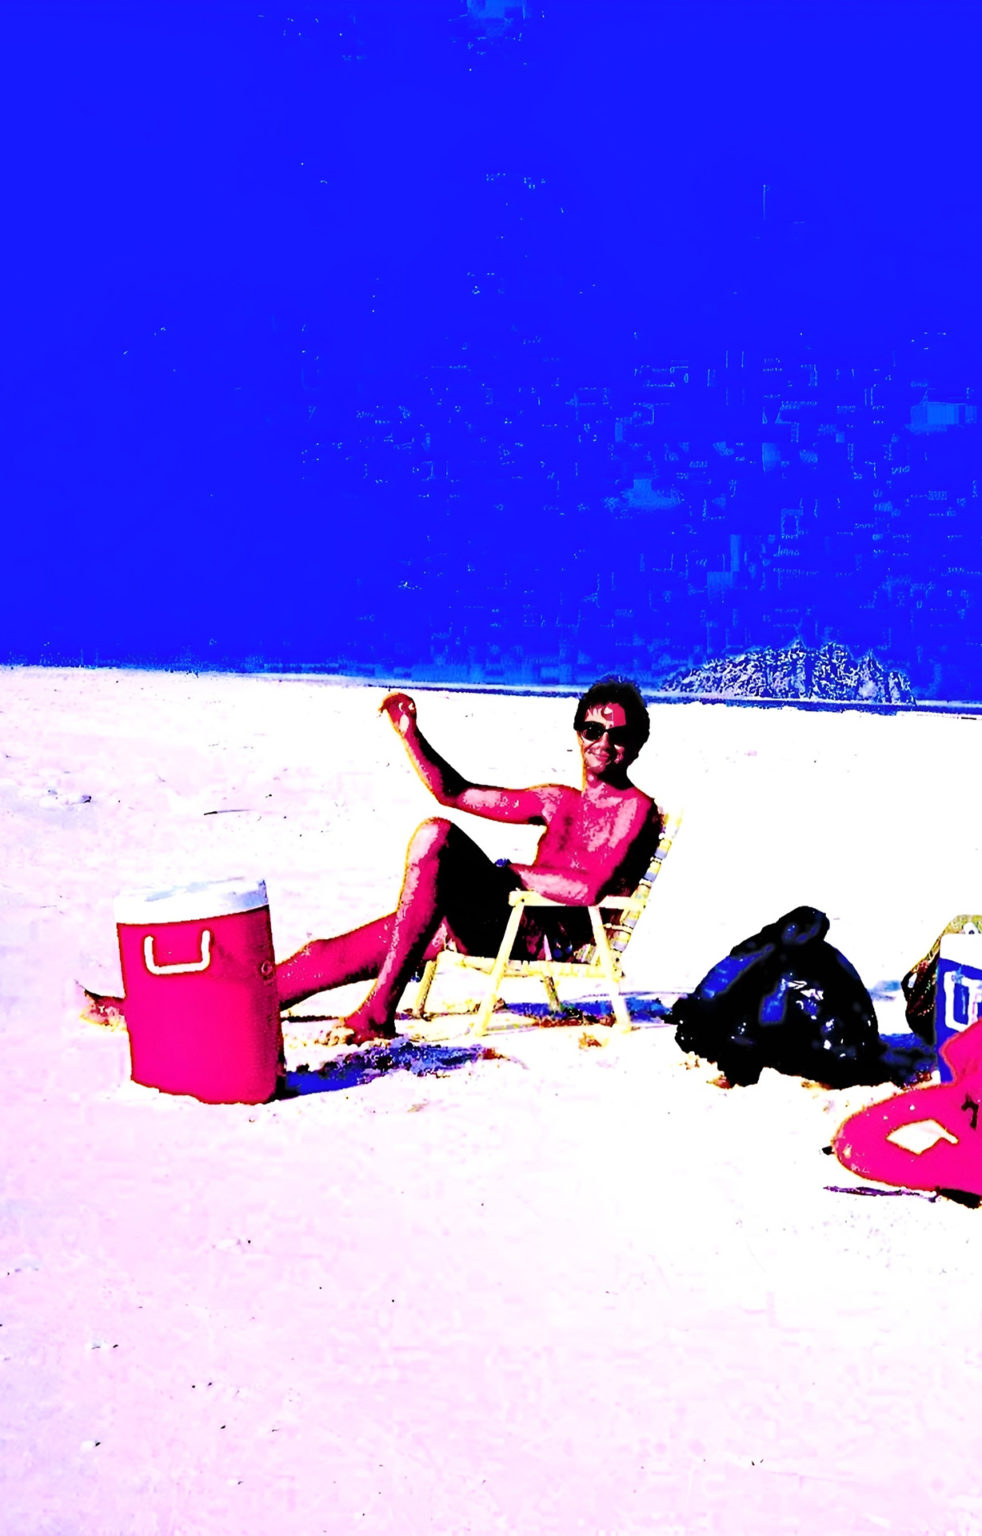 Un homme en maillot de bain est assis sur une chaise de plage sur le sable d'une plage avec, autour de lui des affaires de voyage. Les couleurs dominantes sont le bleu, le rouge, le noir et le blanc. Les couleurs sont très saturées.